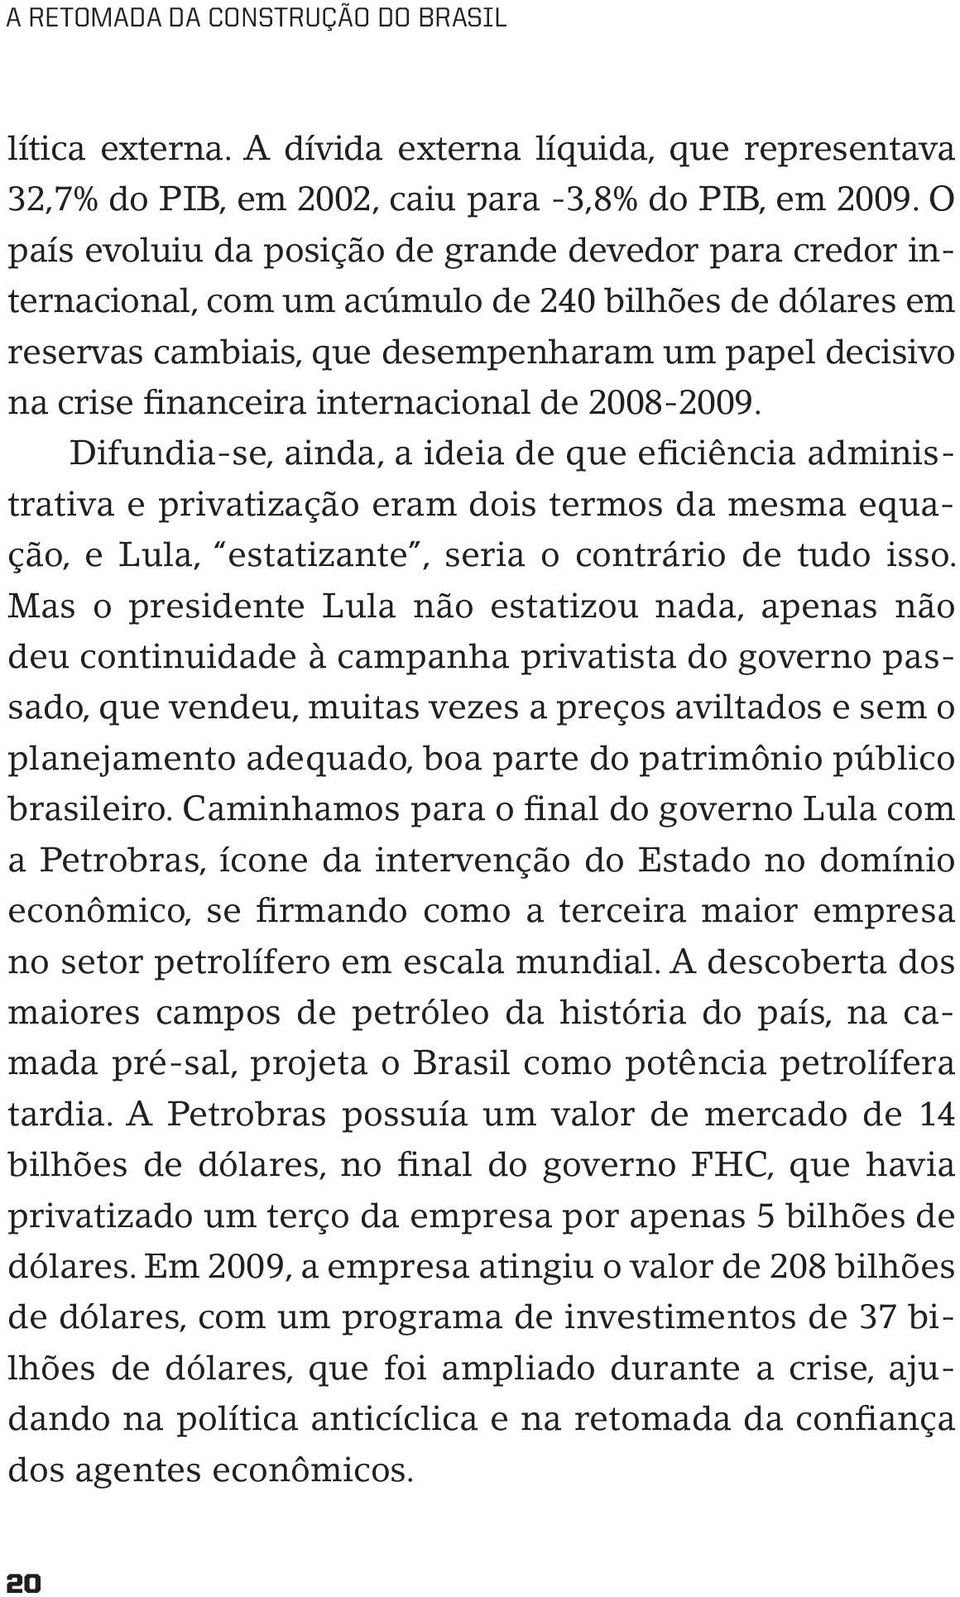 internacional de 2008-2009. Difundia-se, ainda, a ideia de que eficiência administrativa e privatização eram dois termos da mesma equação, e Lula, estatizante, seria o contrário de tudo isso.